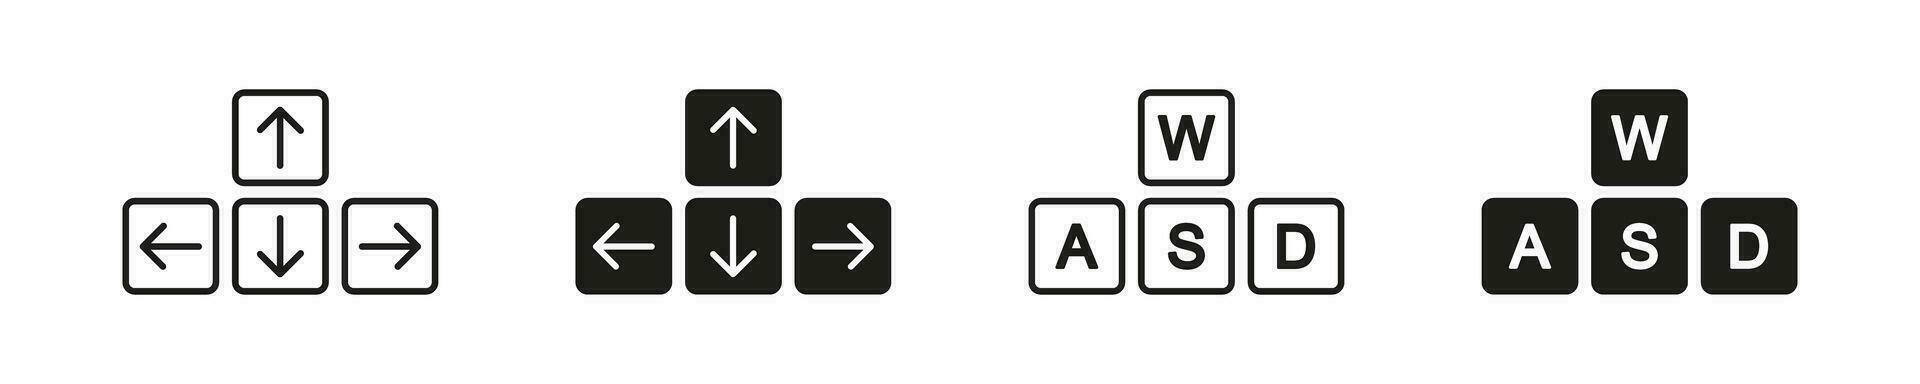 Tastatur Taste Symbol Satz. Taste Pfeil und wasd einstellen Symbol. Vektor Illustration